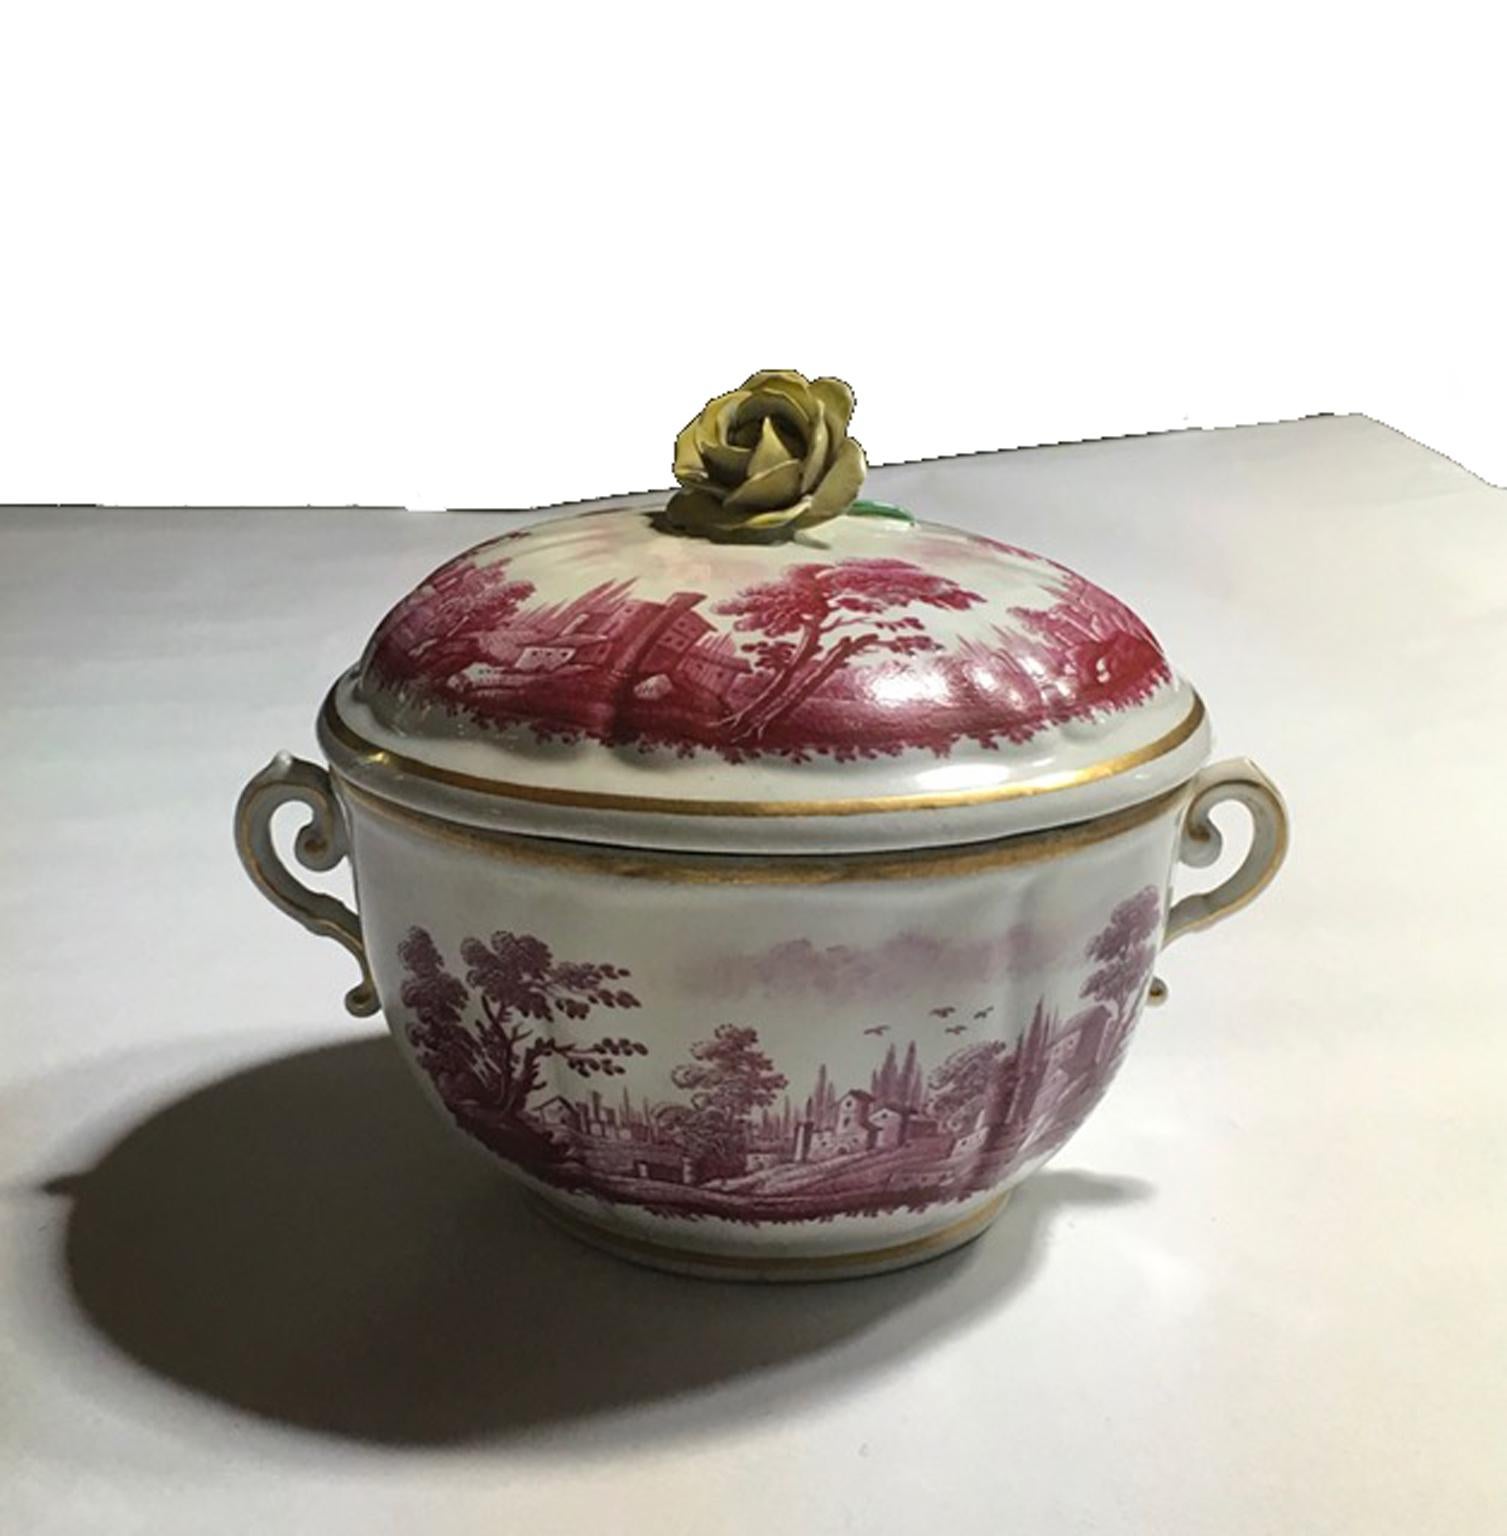 Italienische Richard Ginori Mitte des 18. Jahrhunderts Porzellan bedeckt Tasse oder kleine überdachte Sauce Terrine mit Landschaften in fuchsia Farbe gemalt

Diese schöne überdachte Tasse wurde im flämischen Stil handbemalt, wobei die